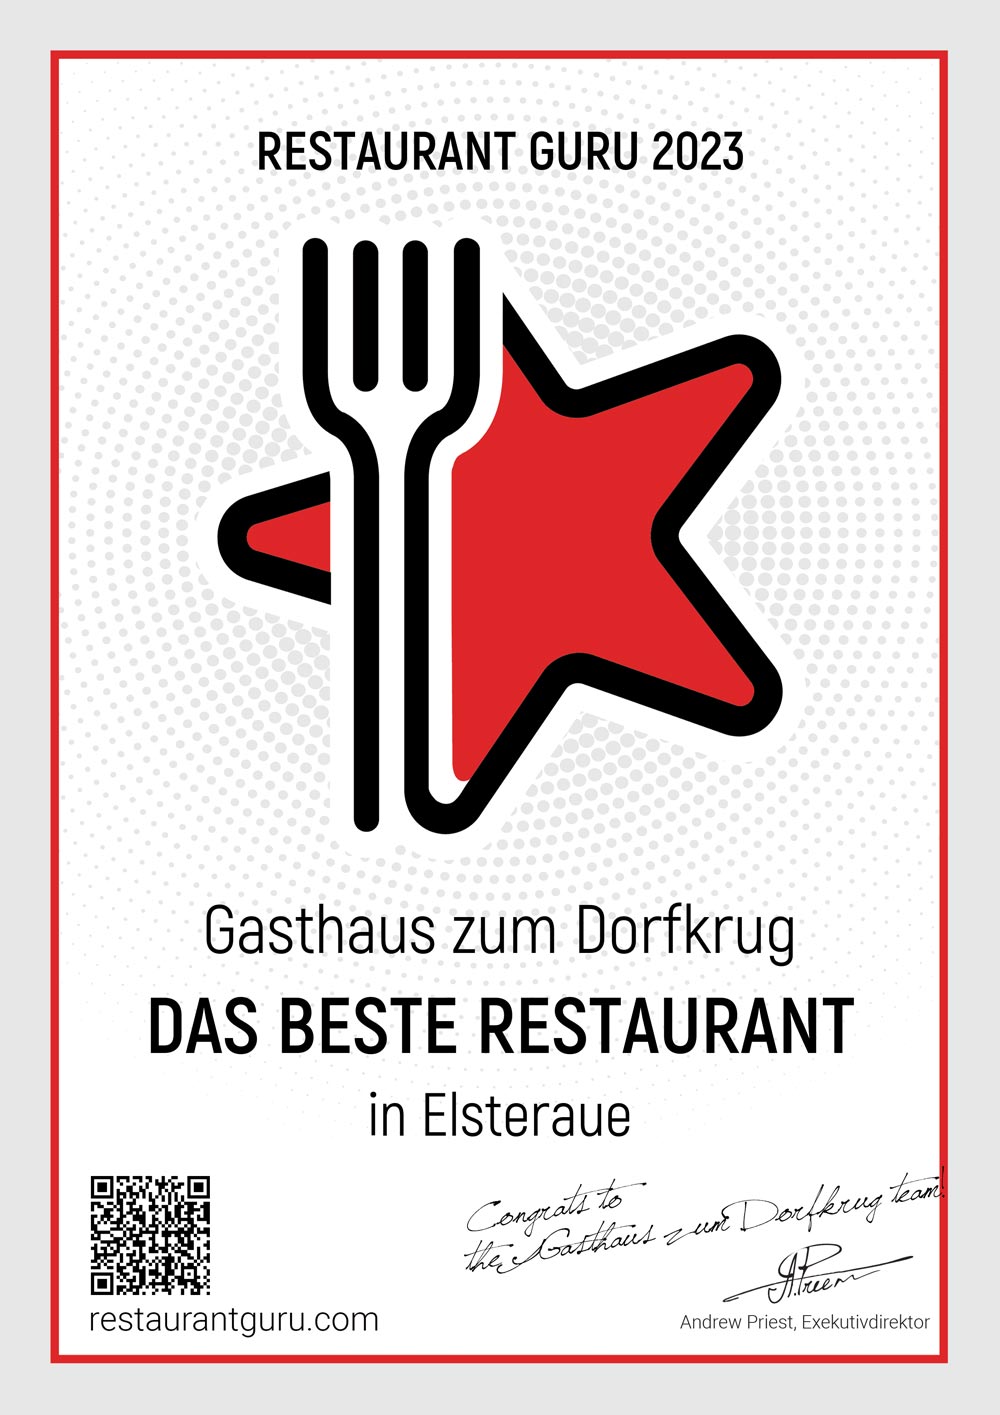 Restaurant Guru Zertifikat Dorfkrug Rehmsdorf